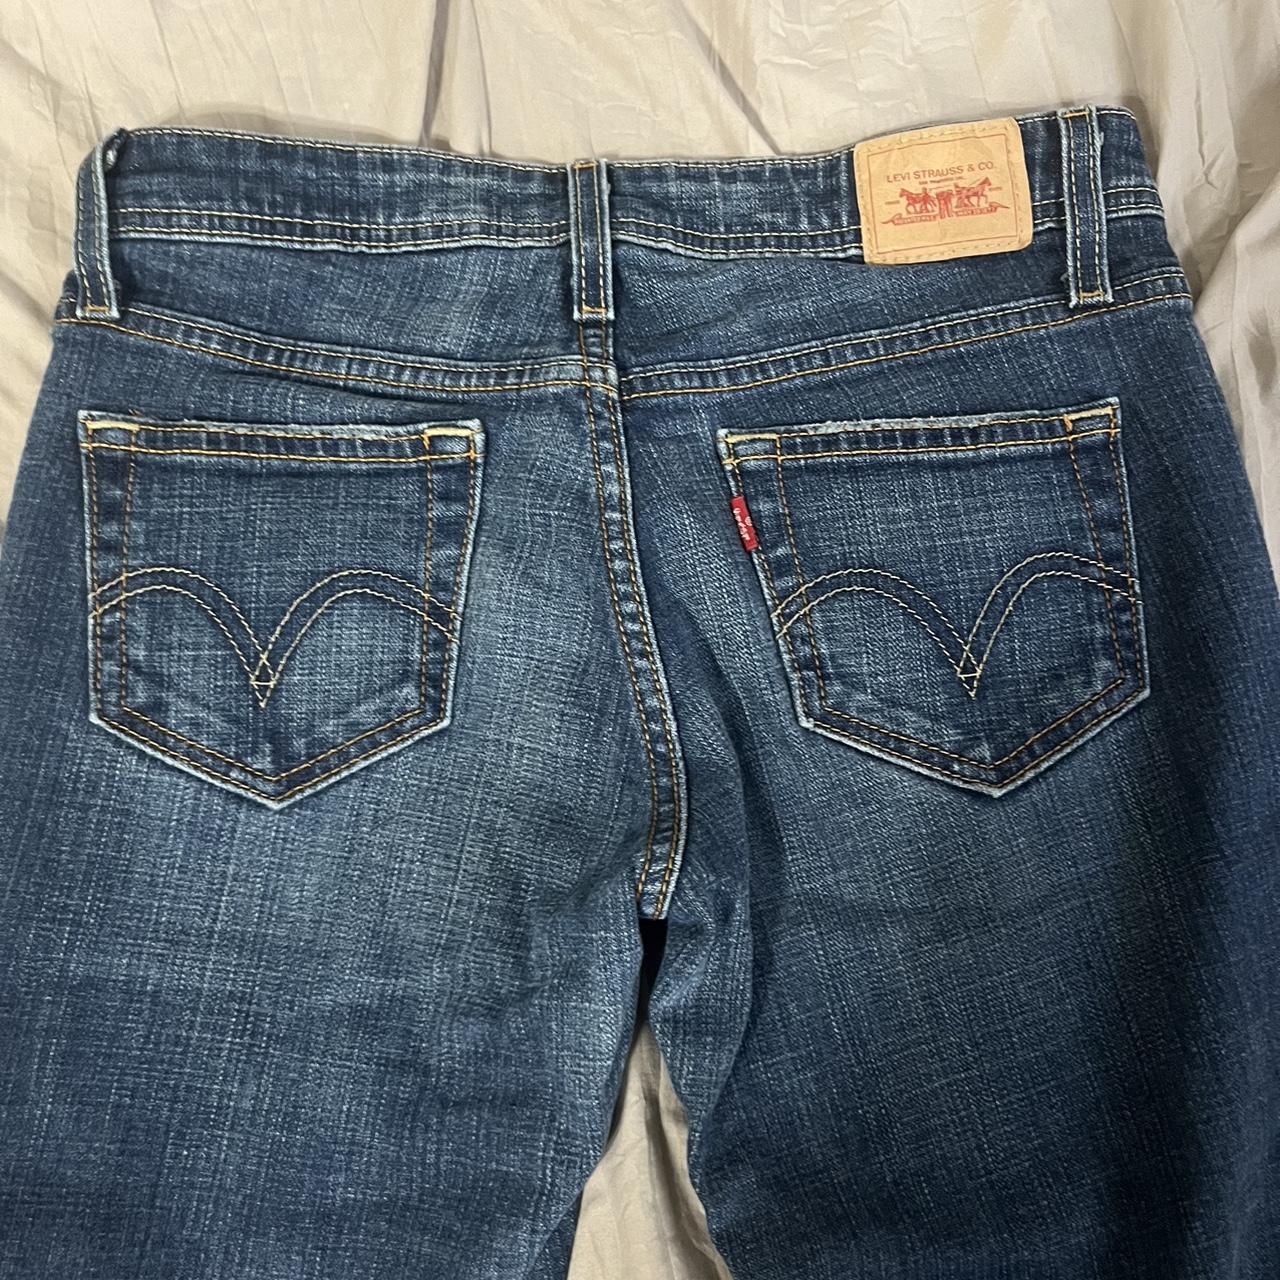 Levi’s low rise bootcut jeanss ⭐️ super cute pair,... - Depop